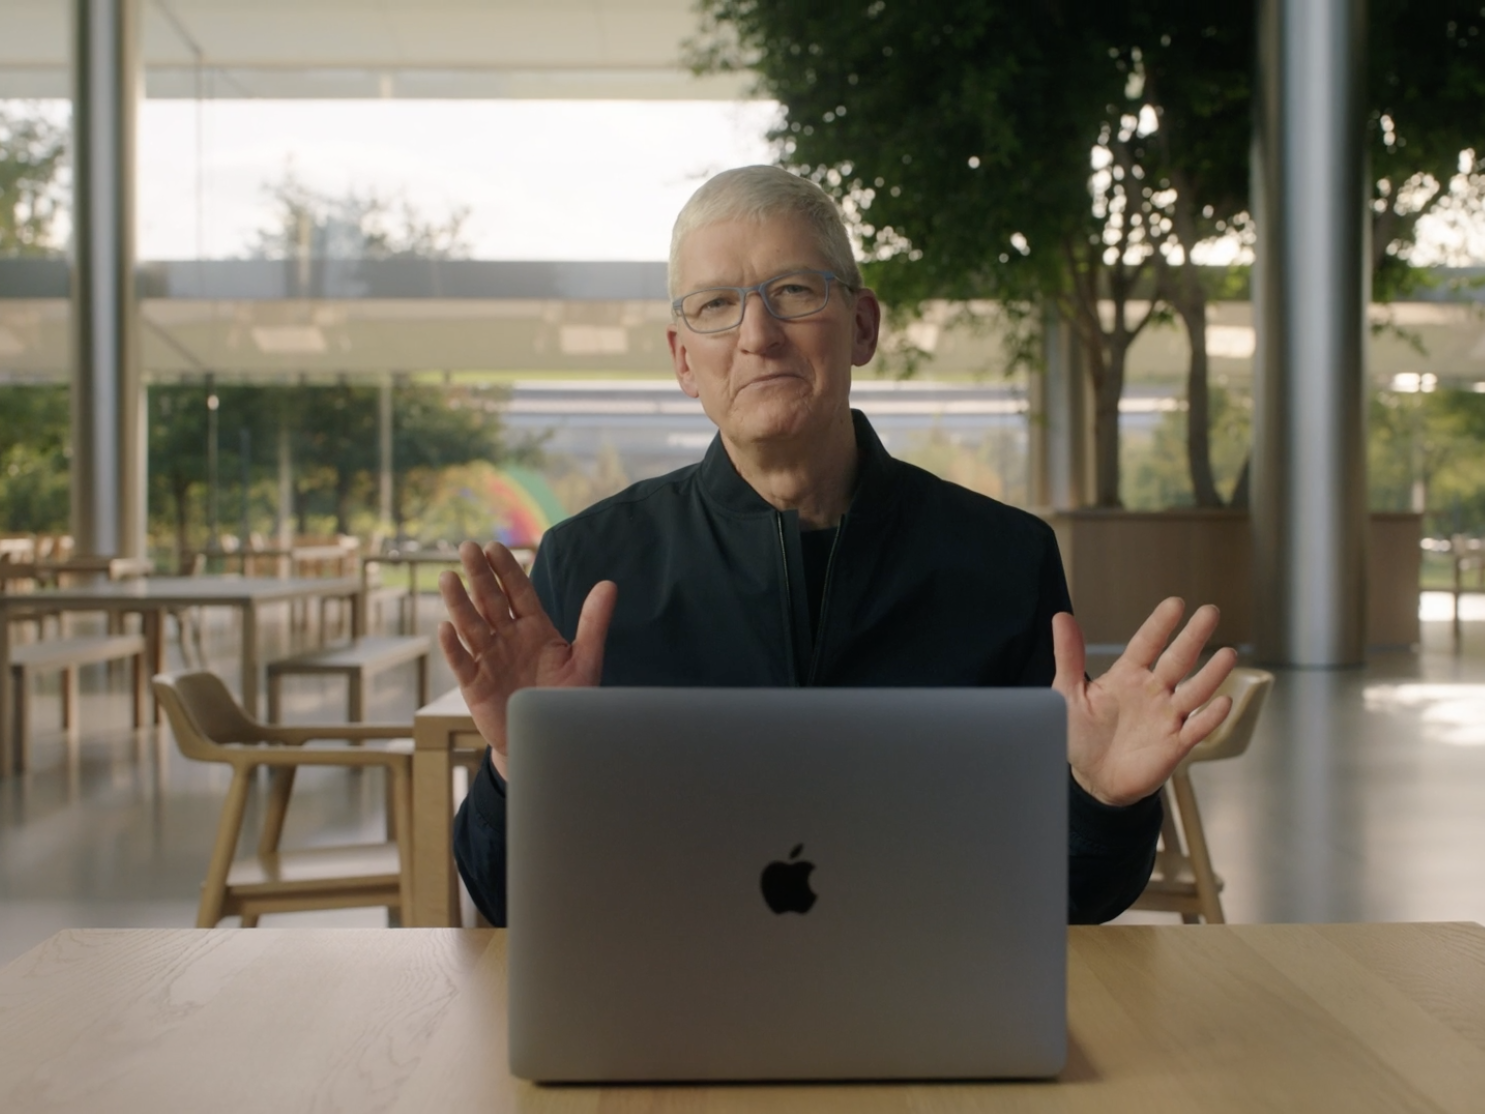 Apple MacBook event 2020